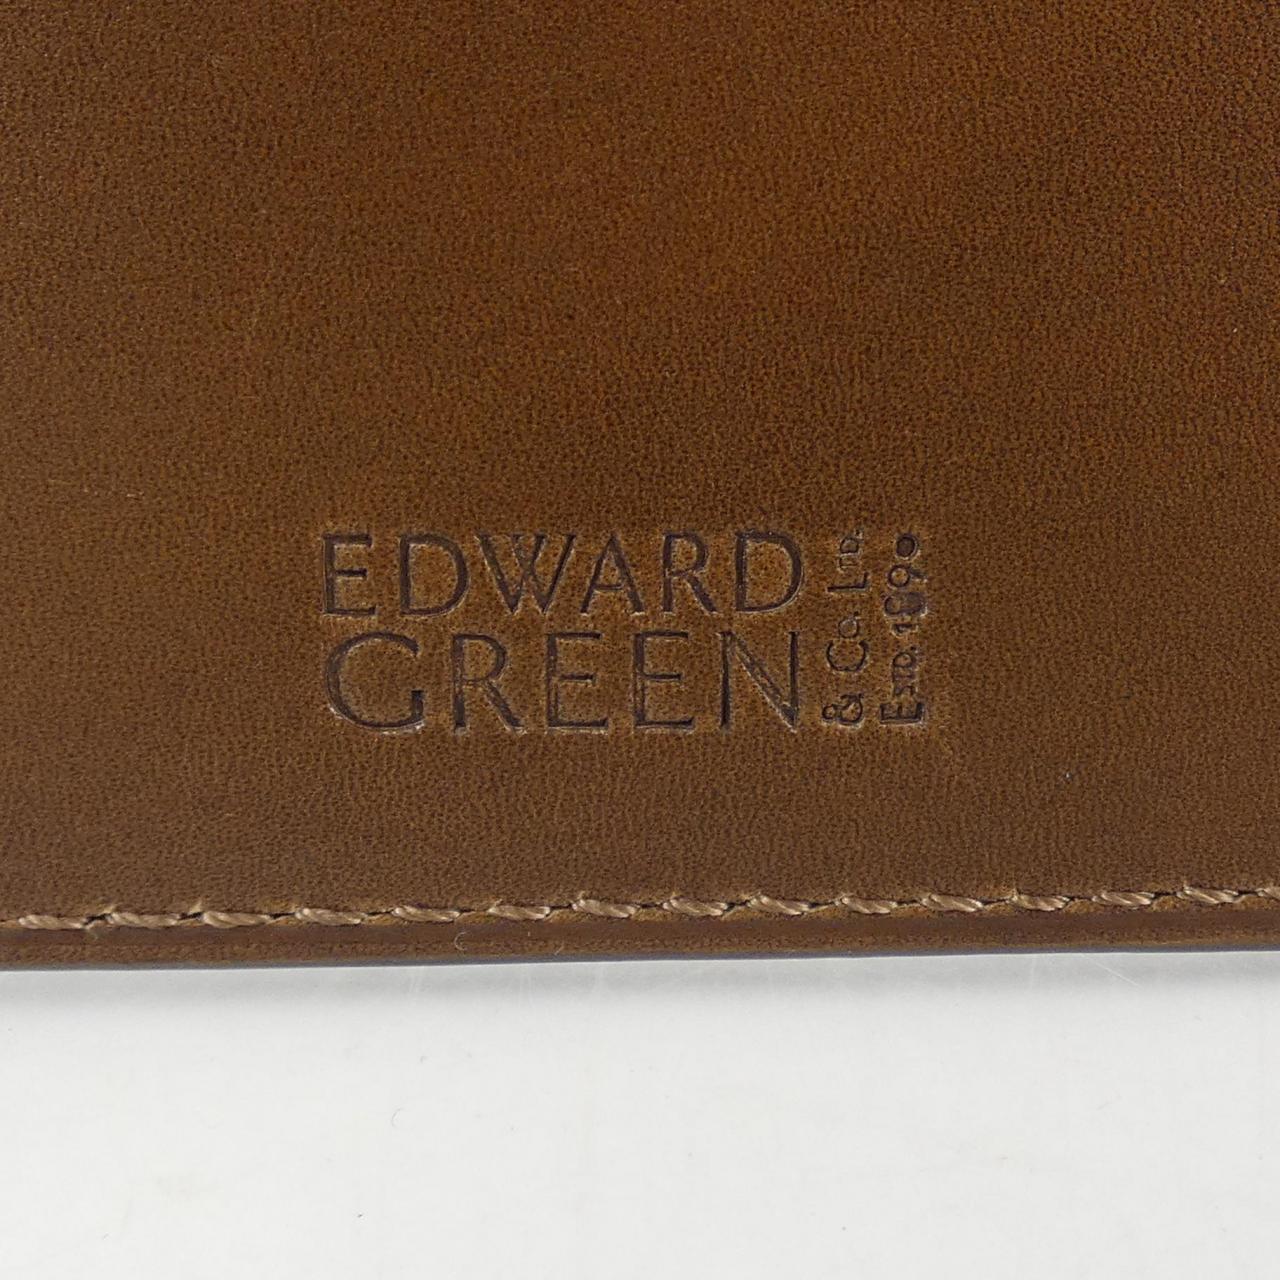 愛德華綠EDWARD GREEN CARD CASE